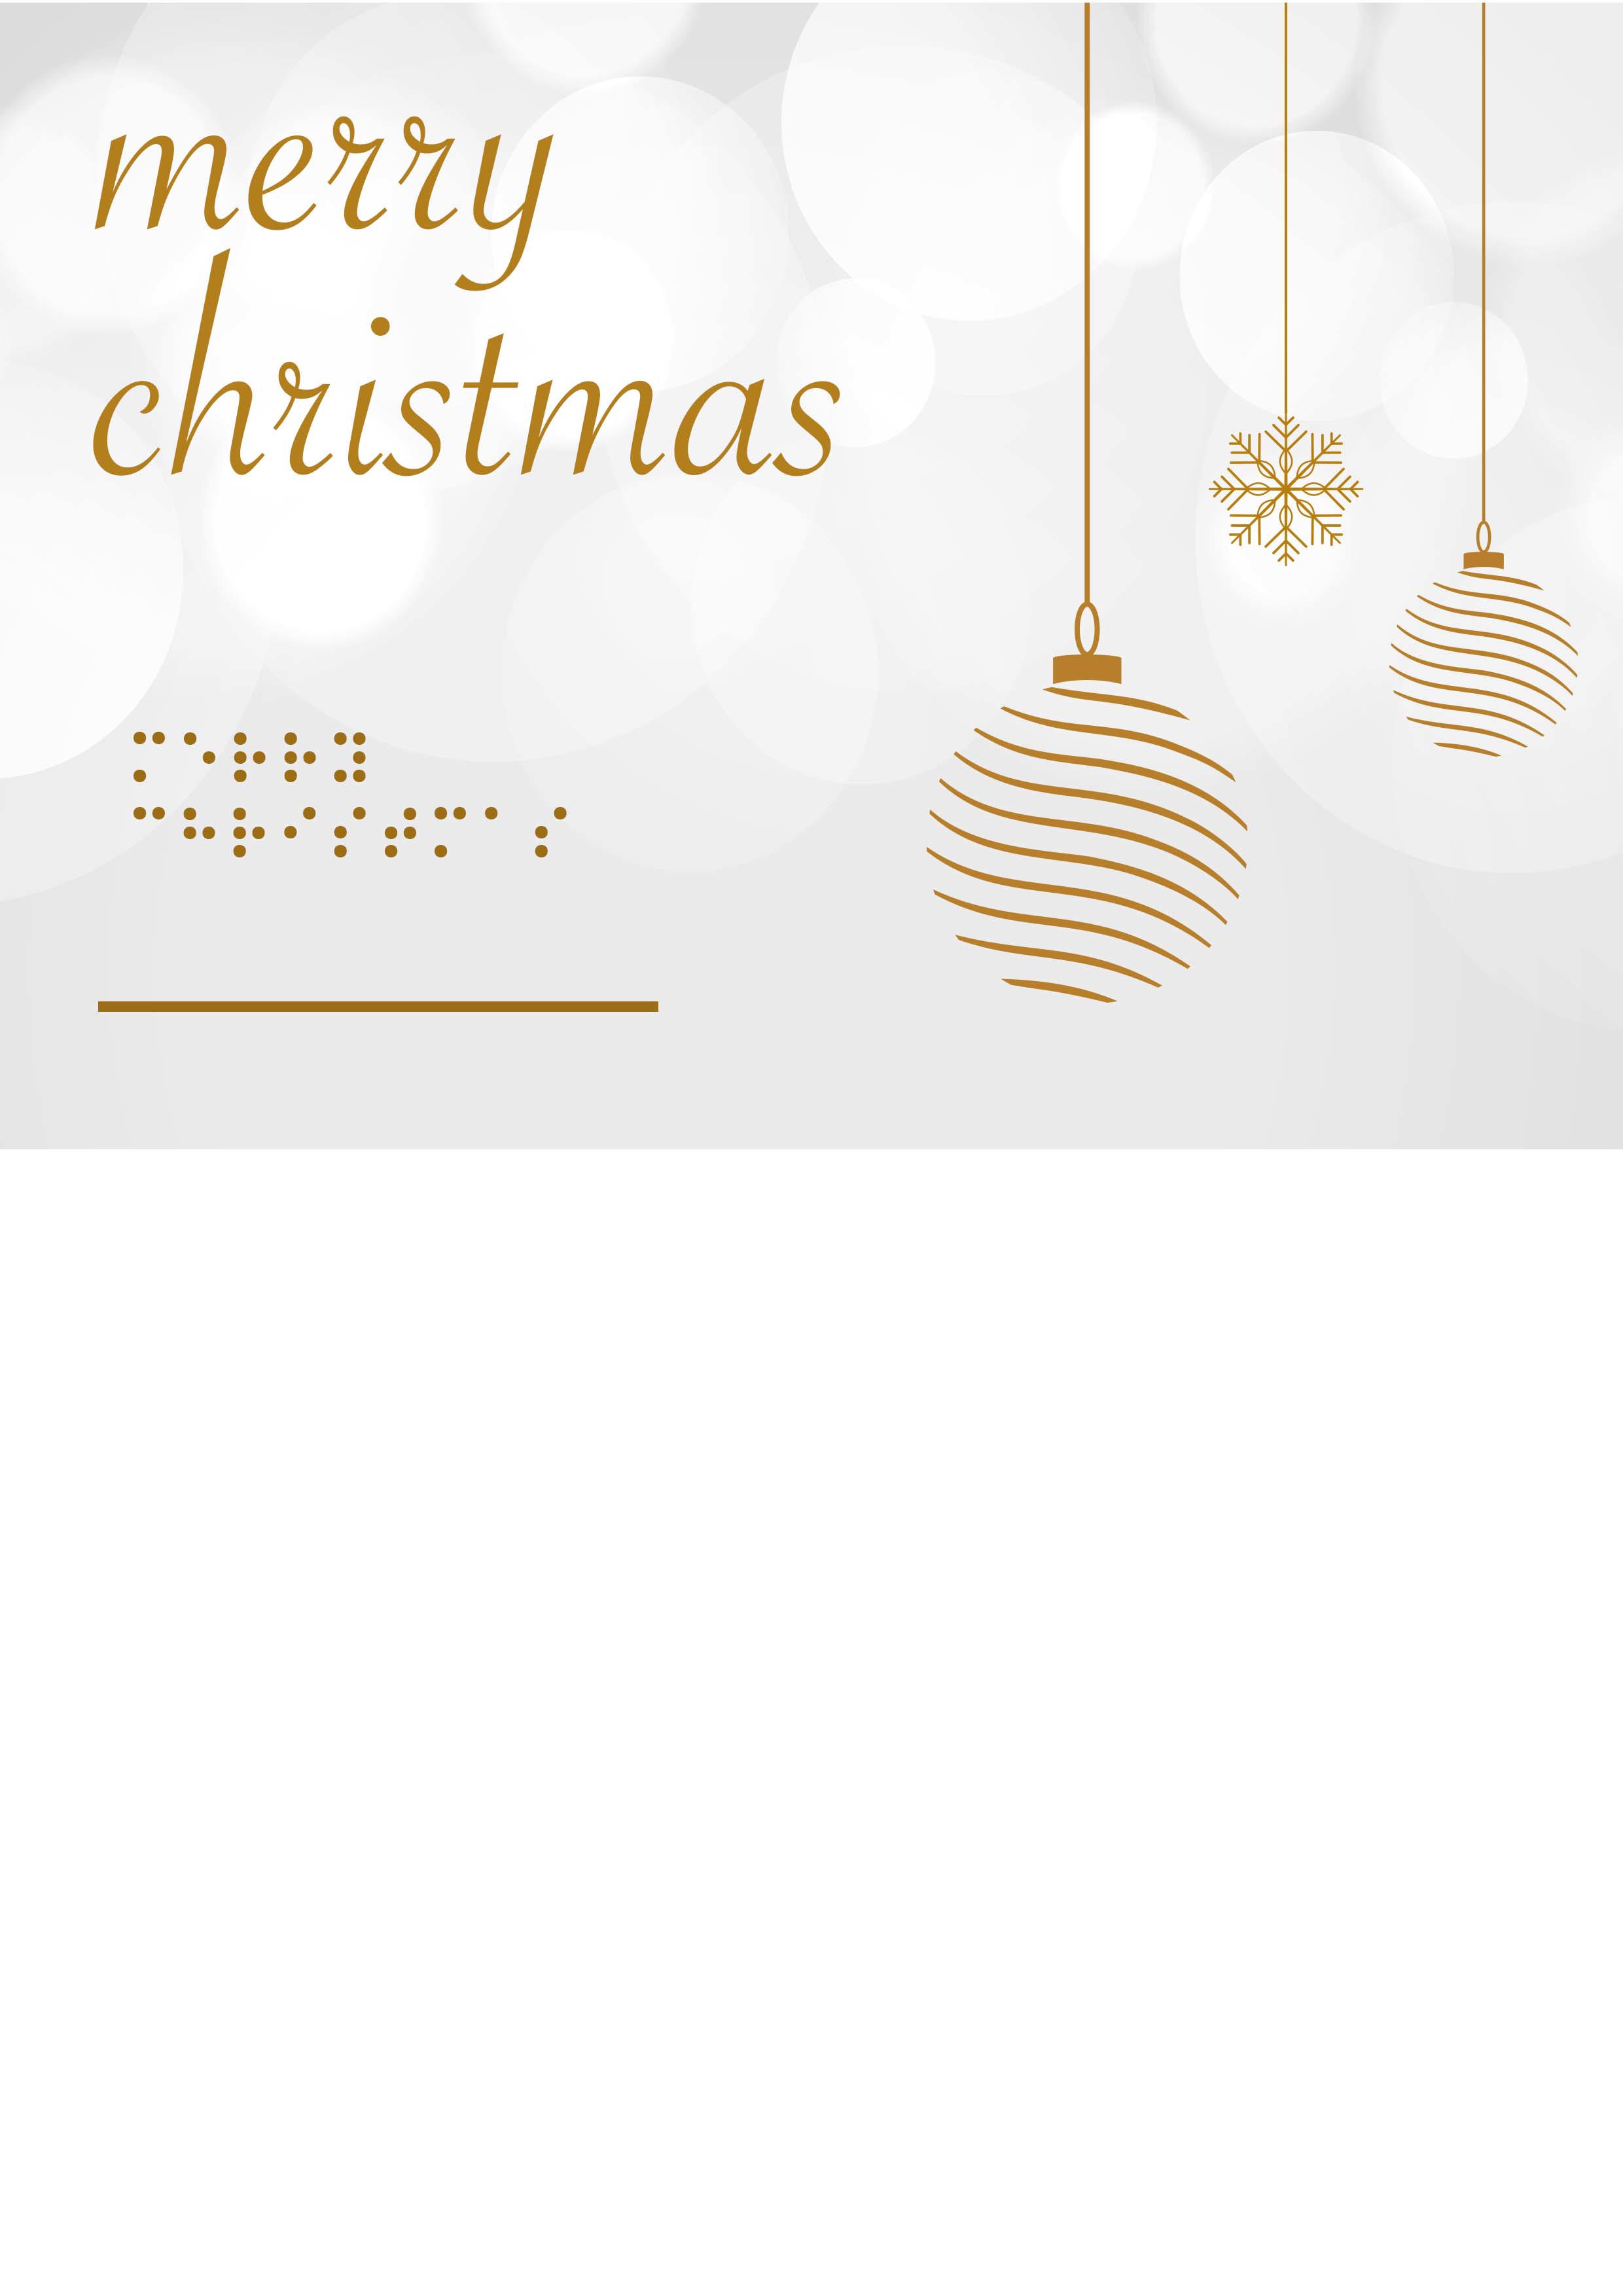 Voelbare kaart met braille en in reliëf twee hangende, stylistische,  goudkleurig kerstballen en een sneeuwvlok op een wit met grijze achtergrond. Met de tekst: Merry christmas.